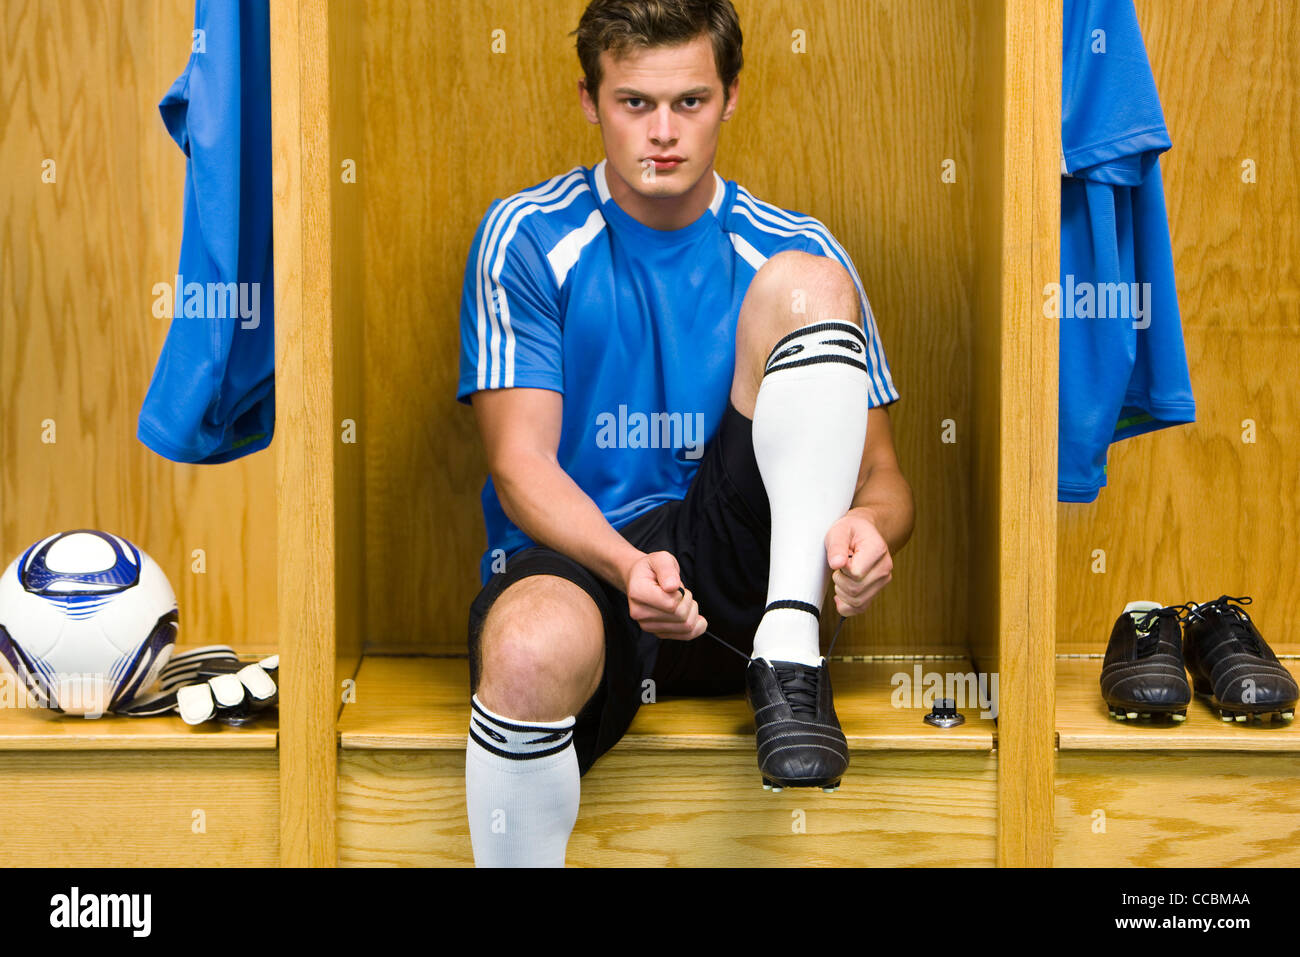 Jeune joueur de soccer chaussures de liage, portrait Banque D'Images